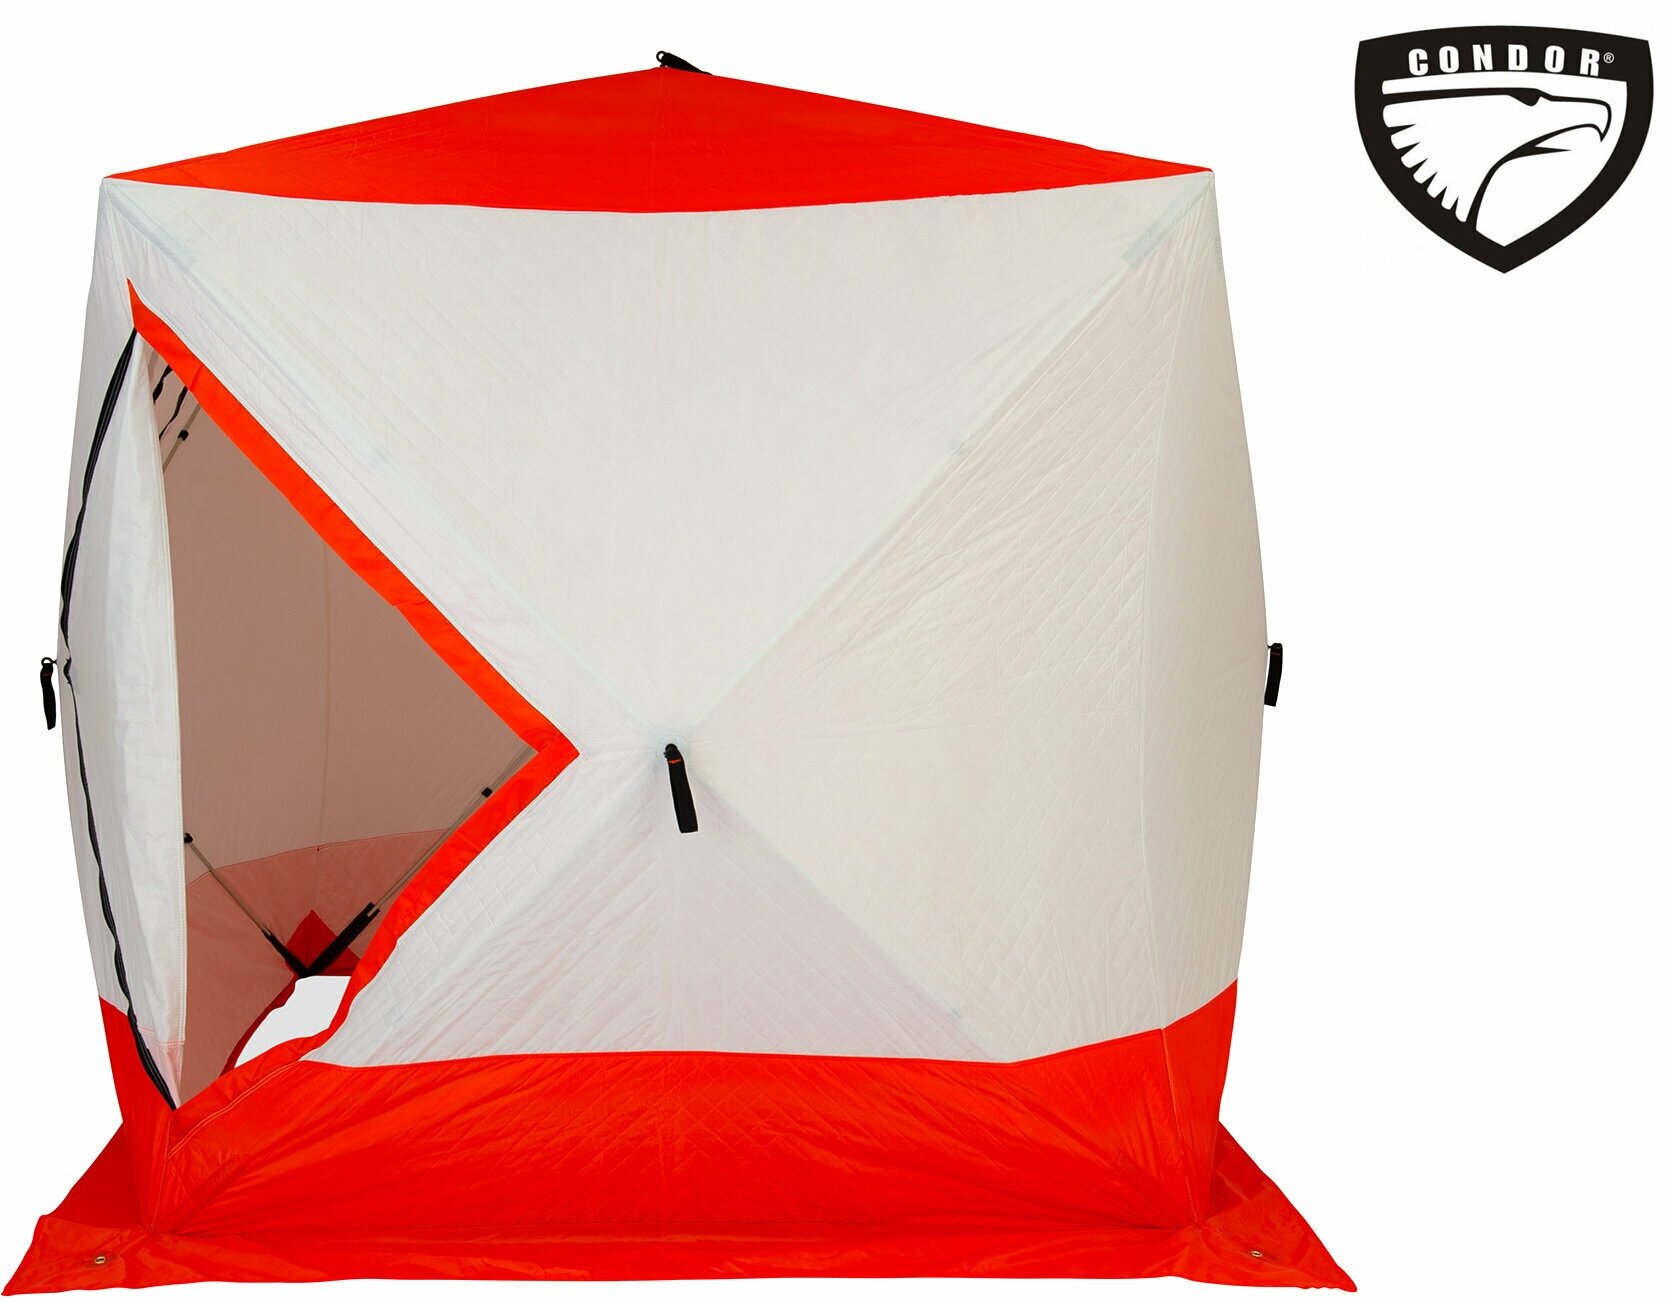 Премиум Палатка Куб "CONDOR" зимняя утепленная, размер 1,8 х 1,8 х 1,95 оранжевый/белый / для зимней рыбалки / подарок на 23 февраля / трехслойная